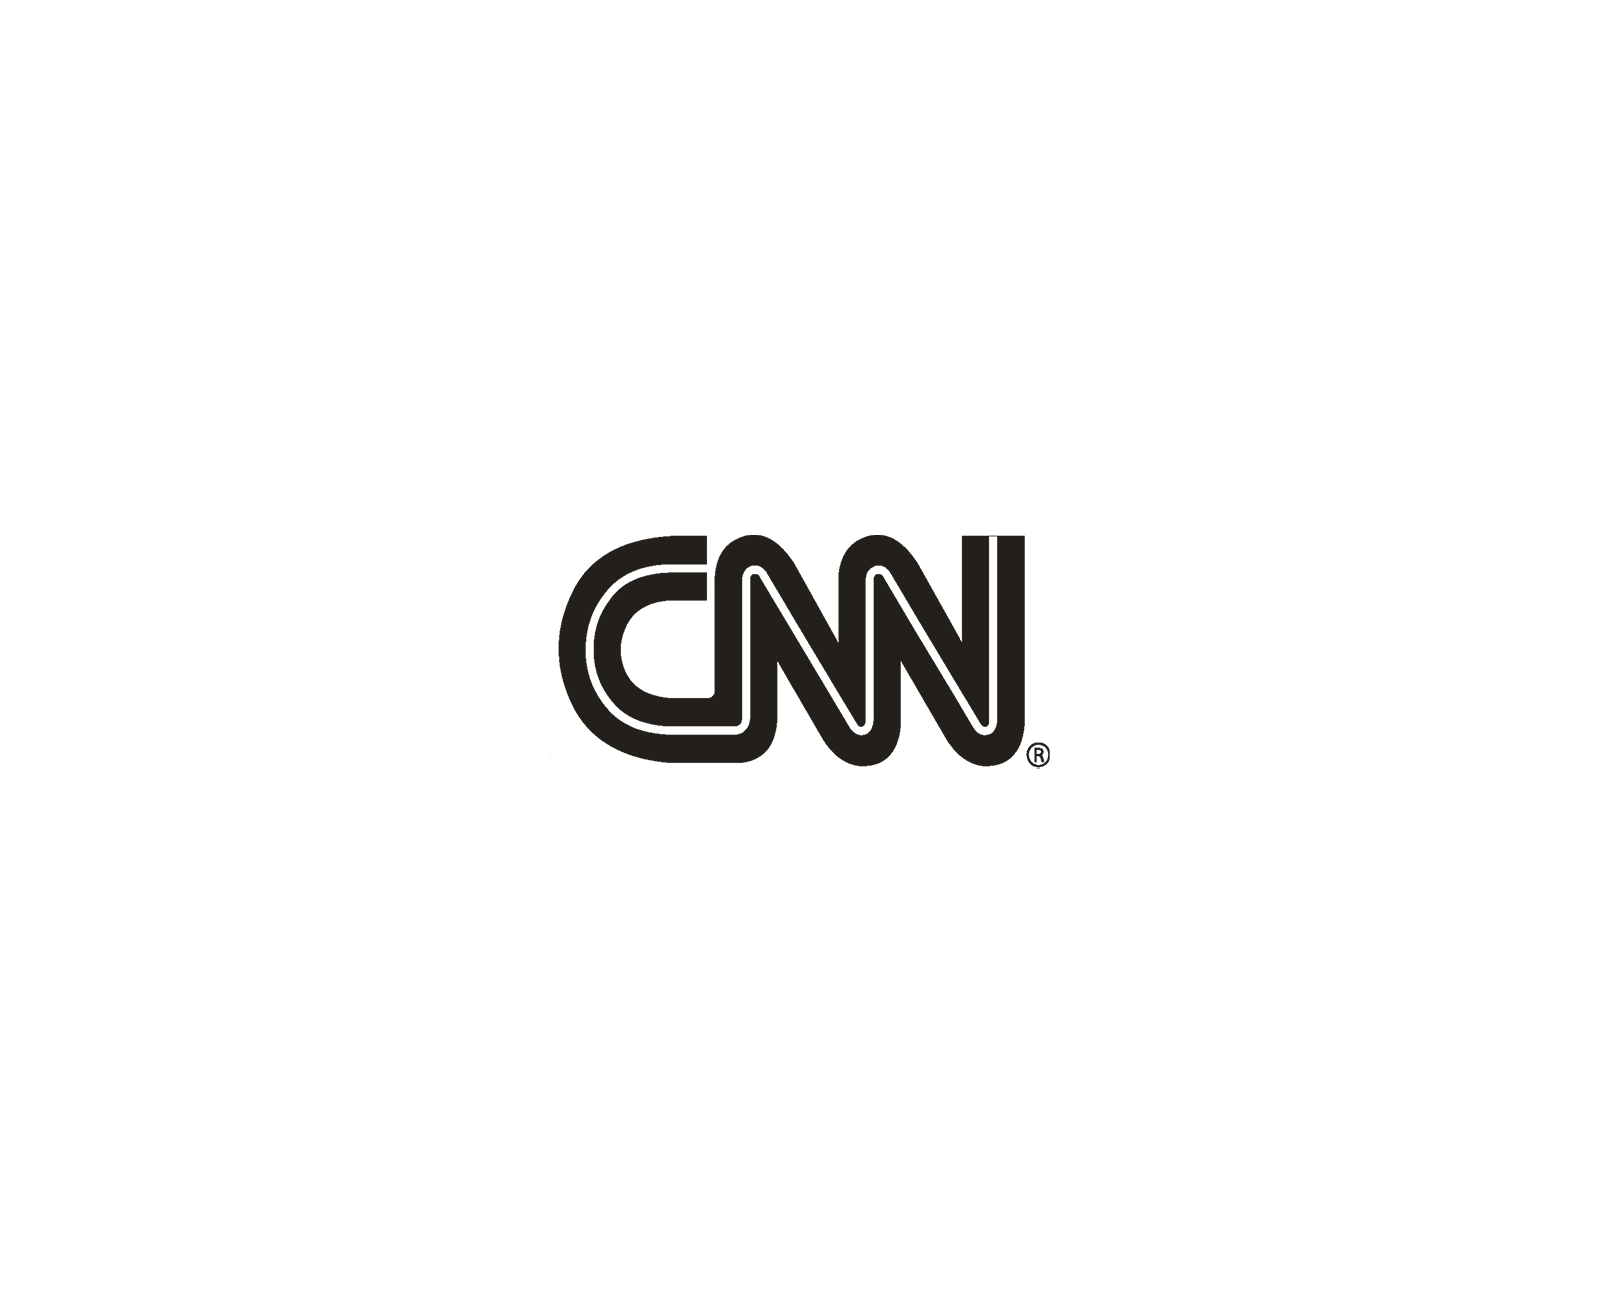 HJ_Press_CNN.png